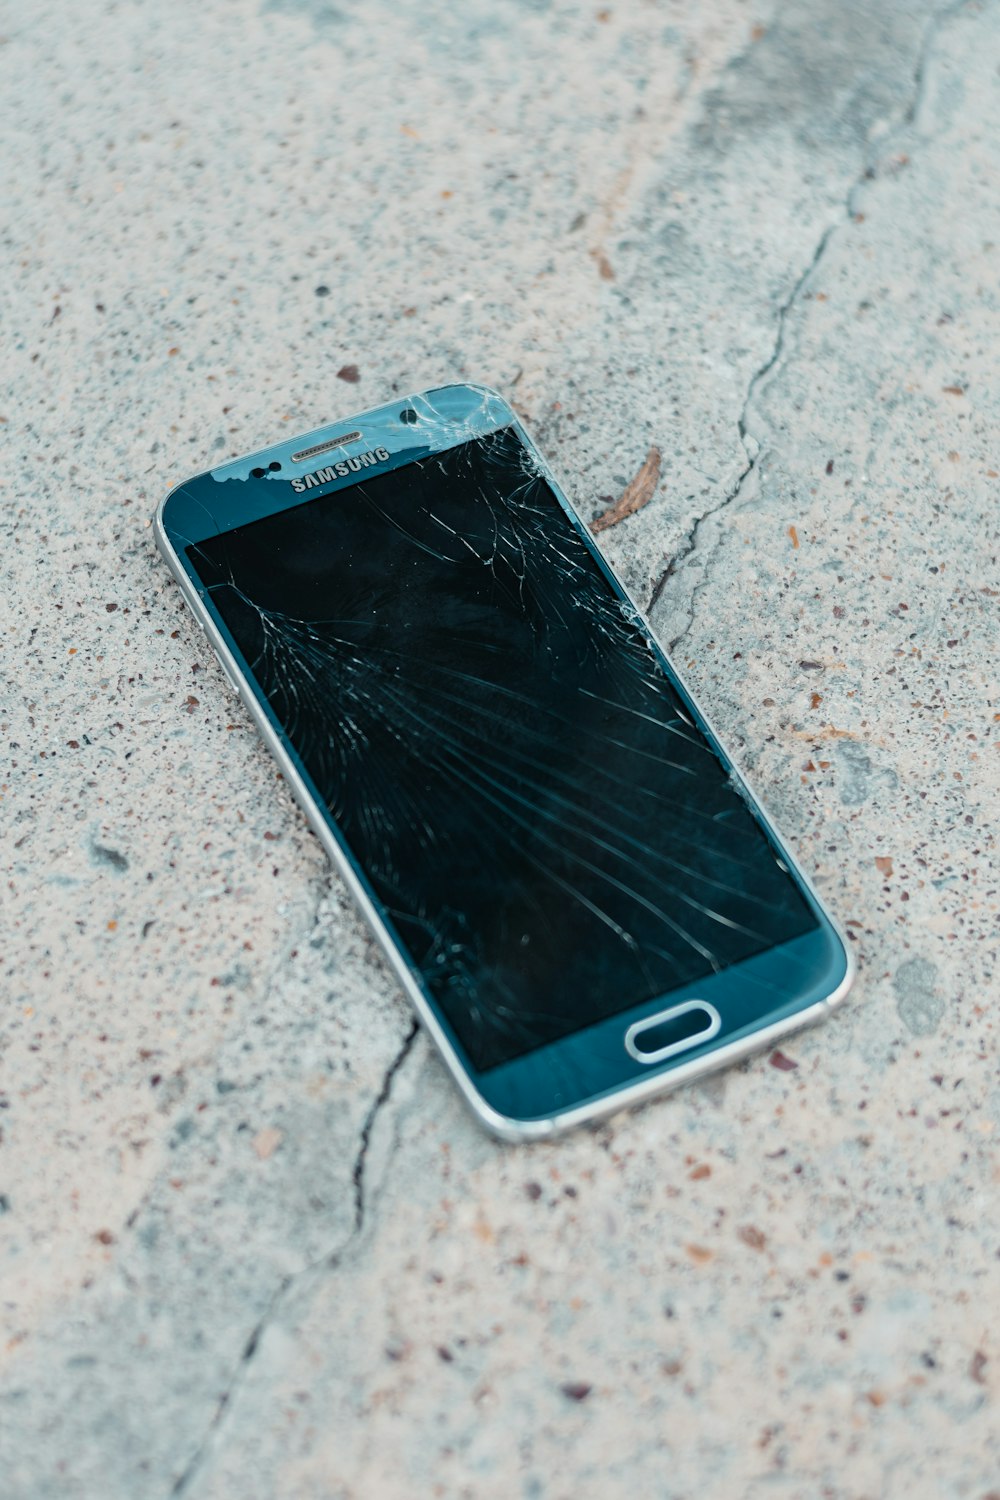 Teléfono inteligente Samsung Android negro sobre piso de concreto gris